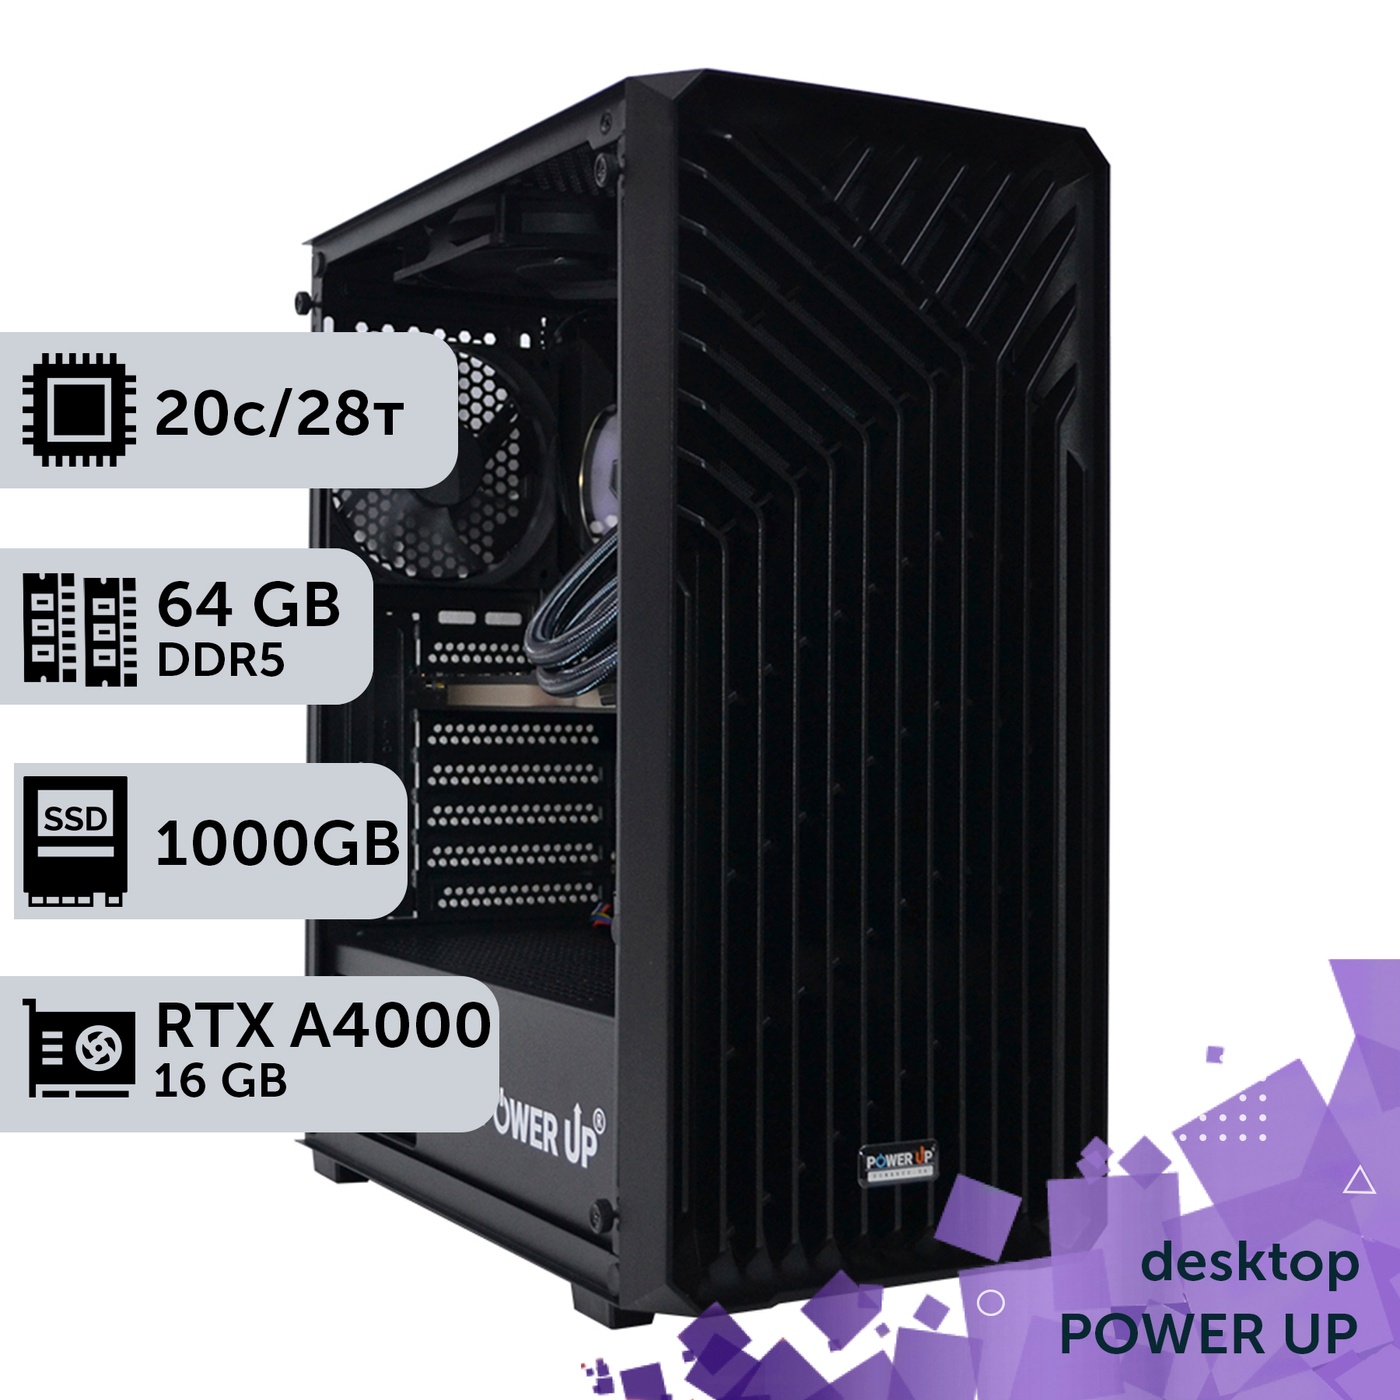 Рабочая станция PowerUp Desktop #319 Core i7 14700K/64 GB/SSD 1TB/NVIDIA Quadro RTX A4000 16GB